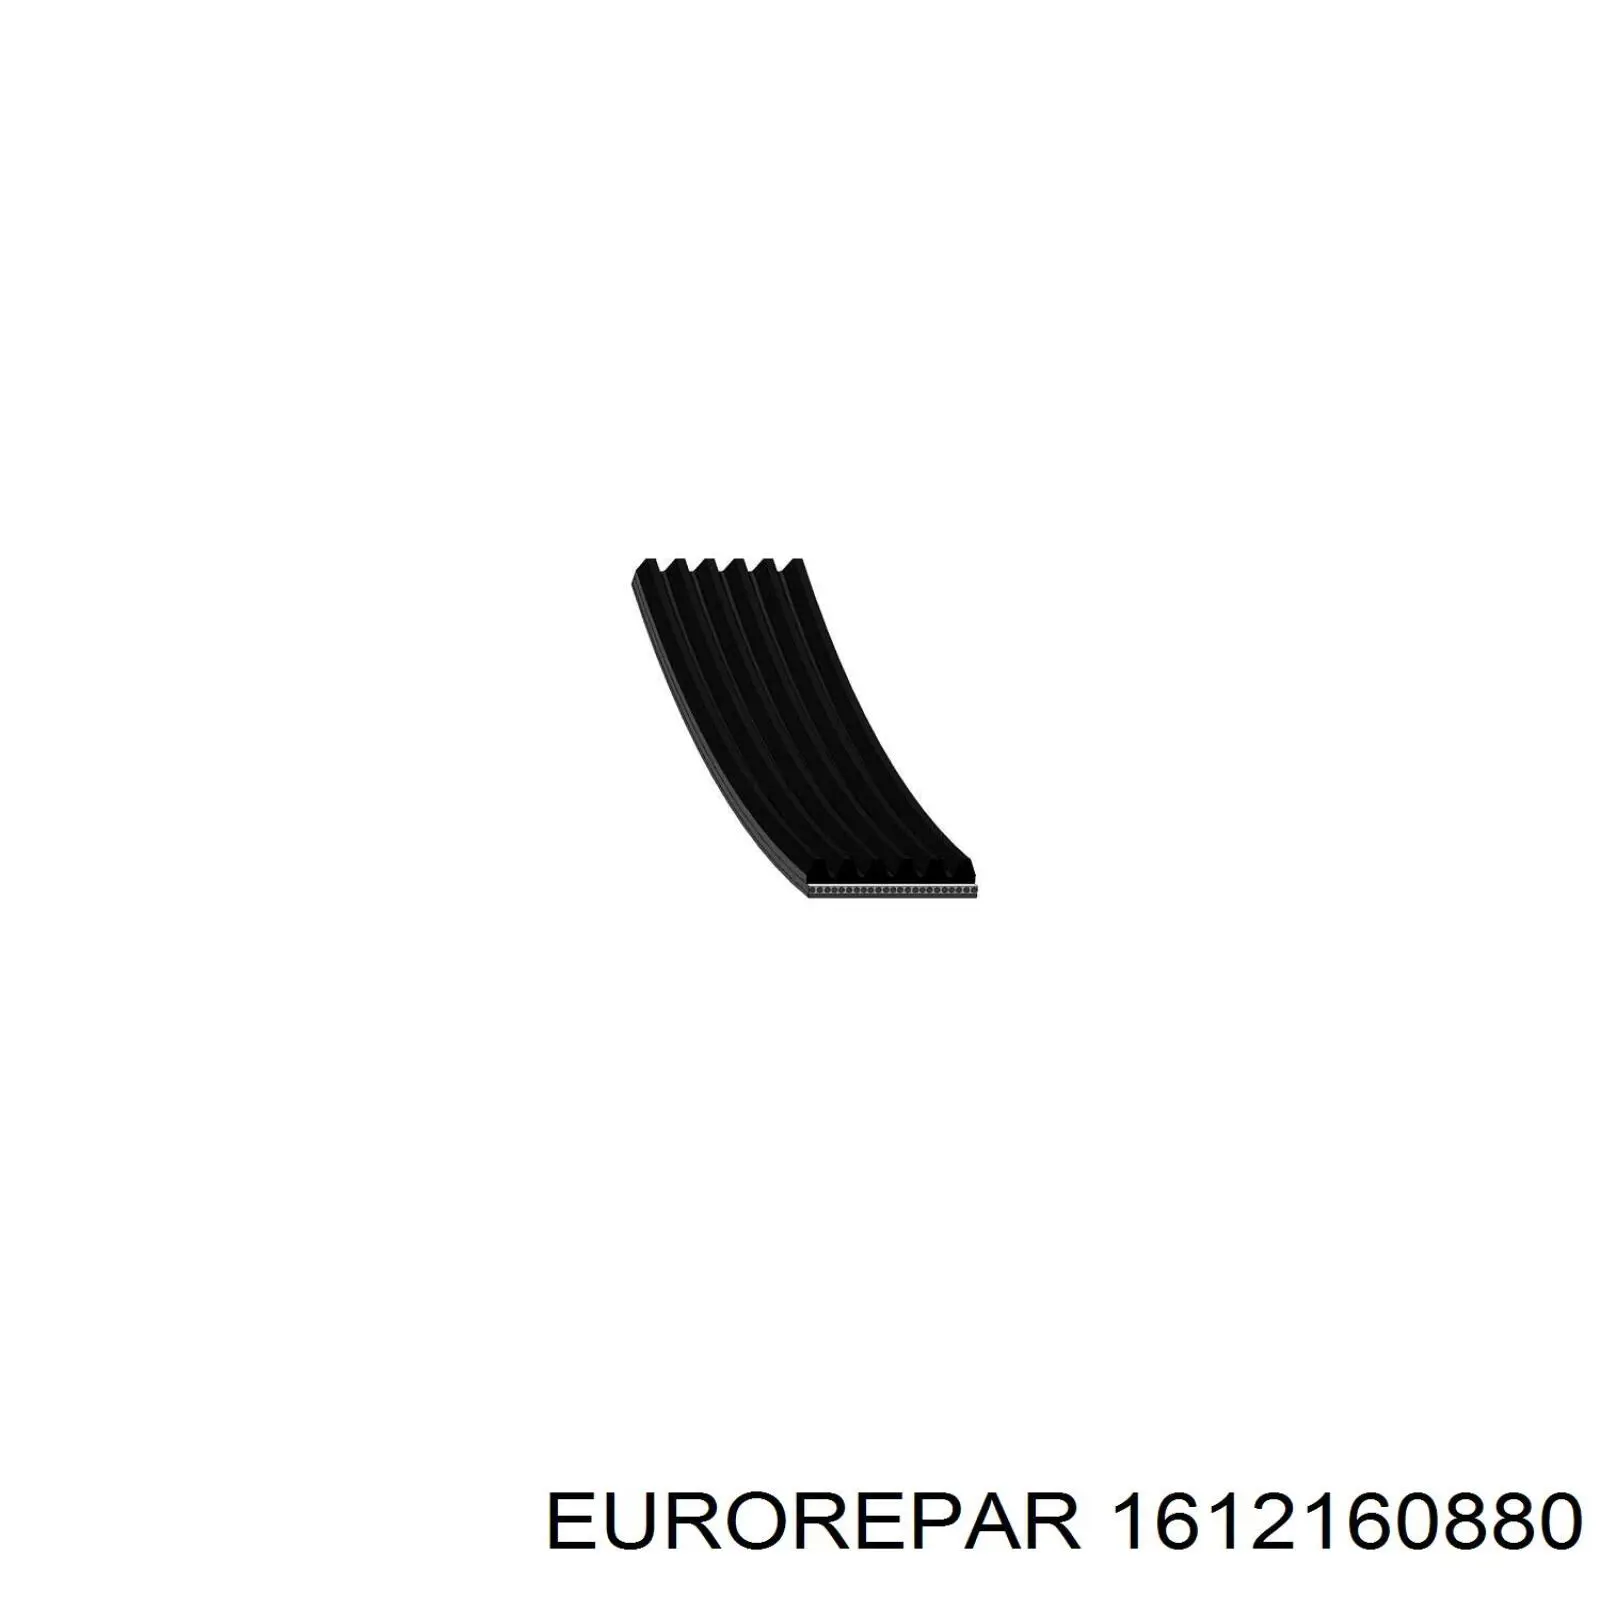 1612160880 Eurorepar correa trapezoidal